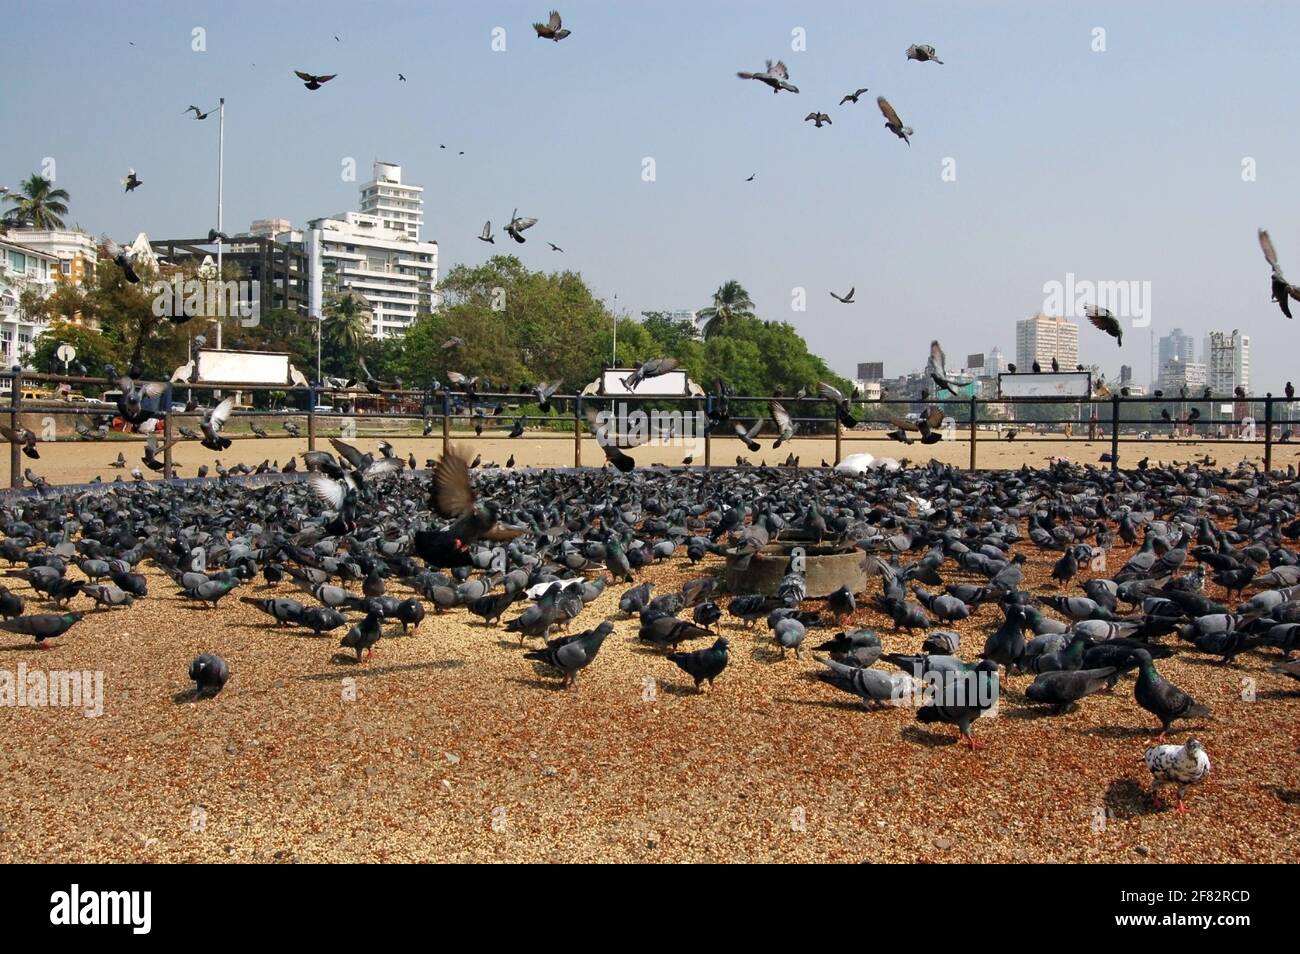 Une zone spéciale pour nourrir les céréales aux oiseaux sauvages sur Chowpatty Beach, Mumbai (anciennement Bombay), Inde. Banque D'Images